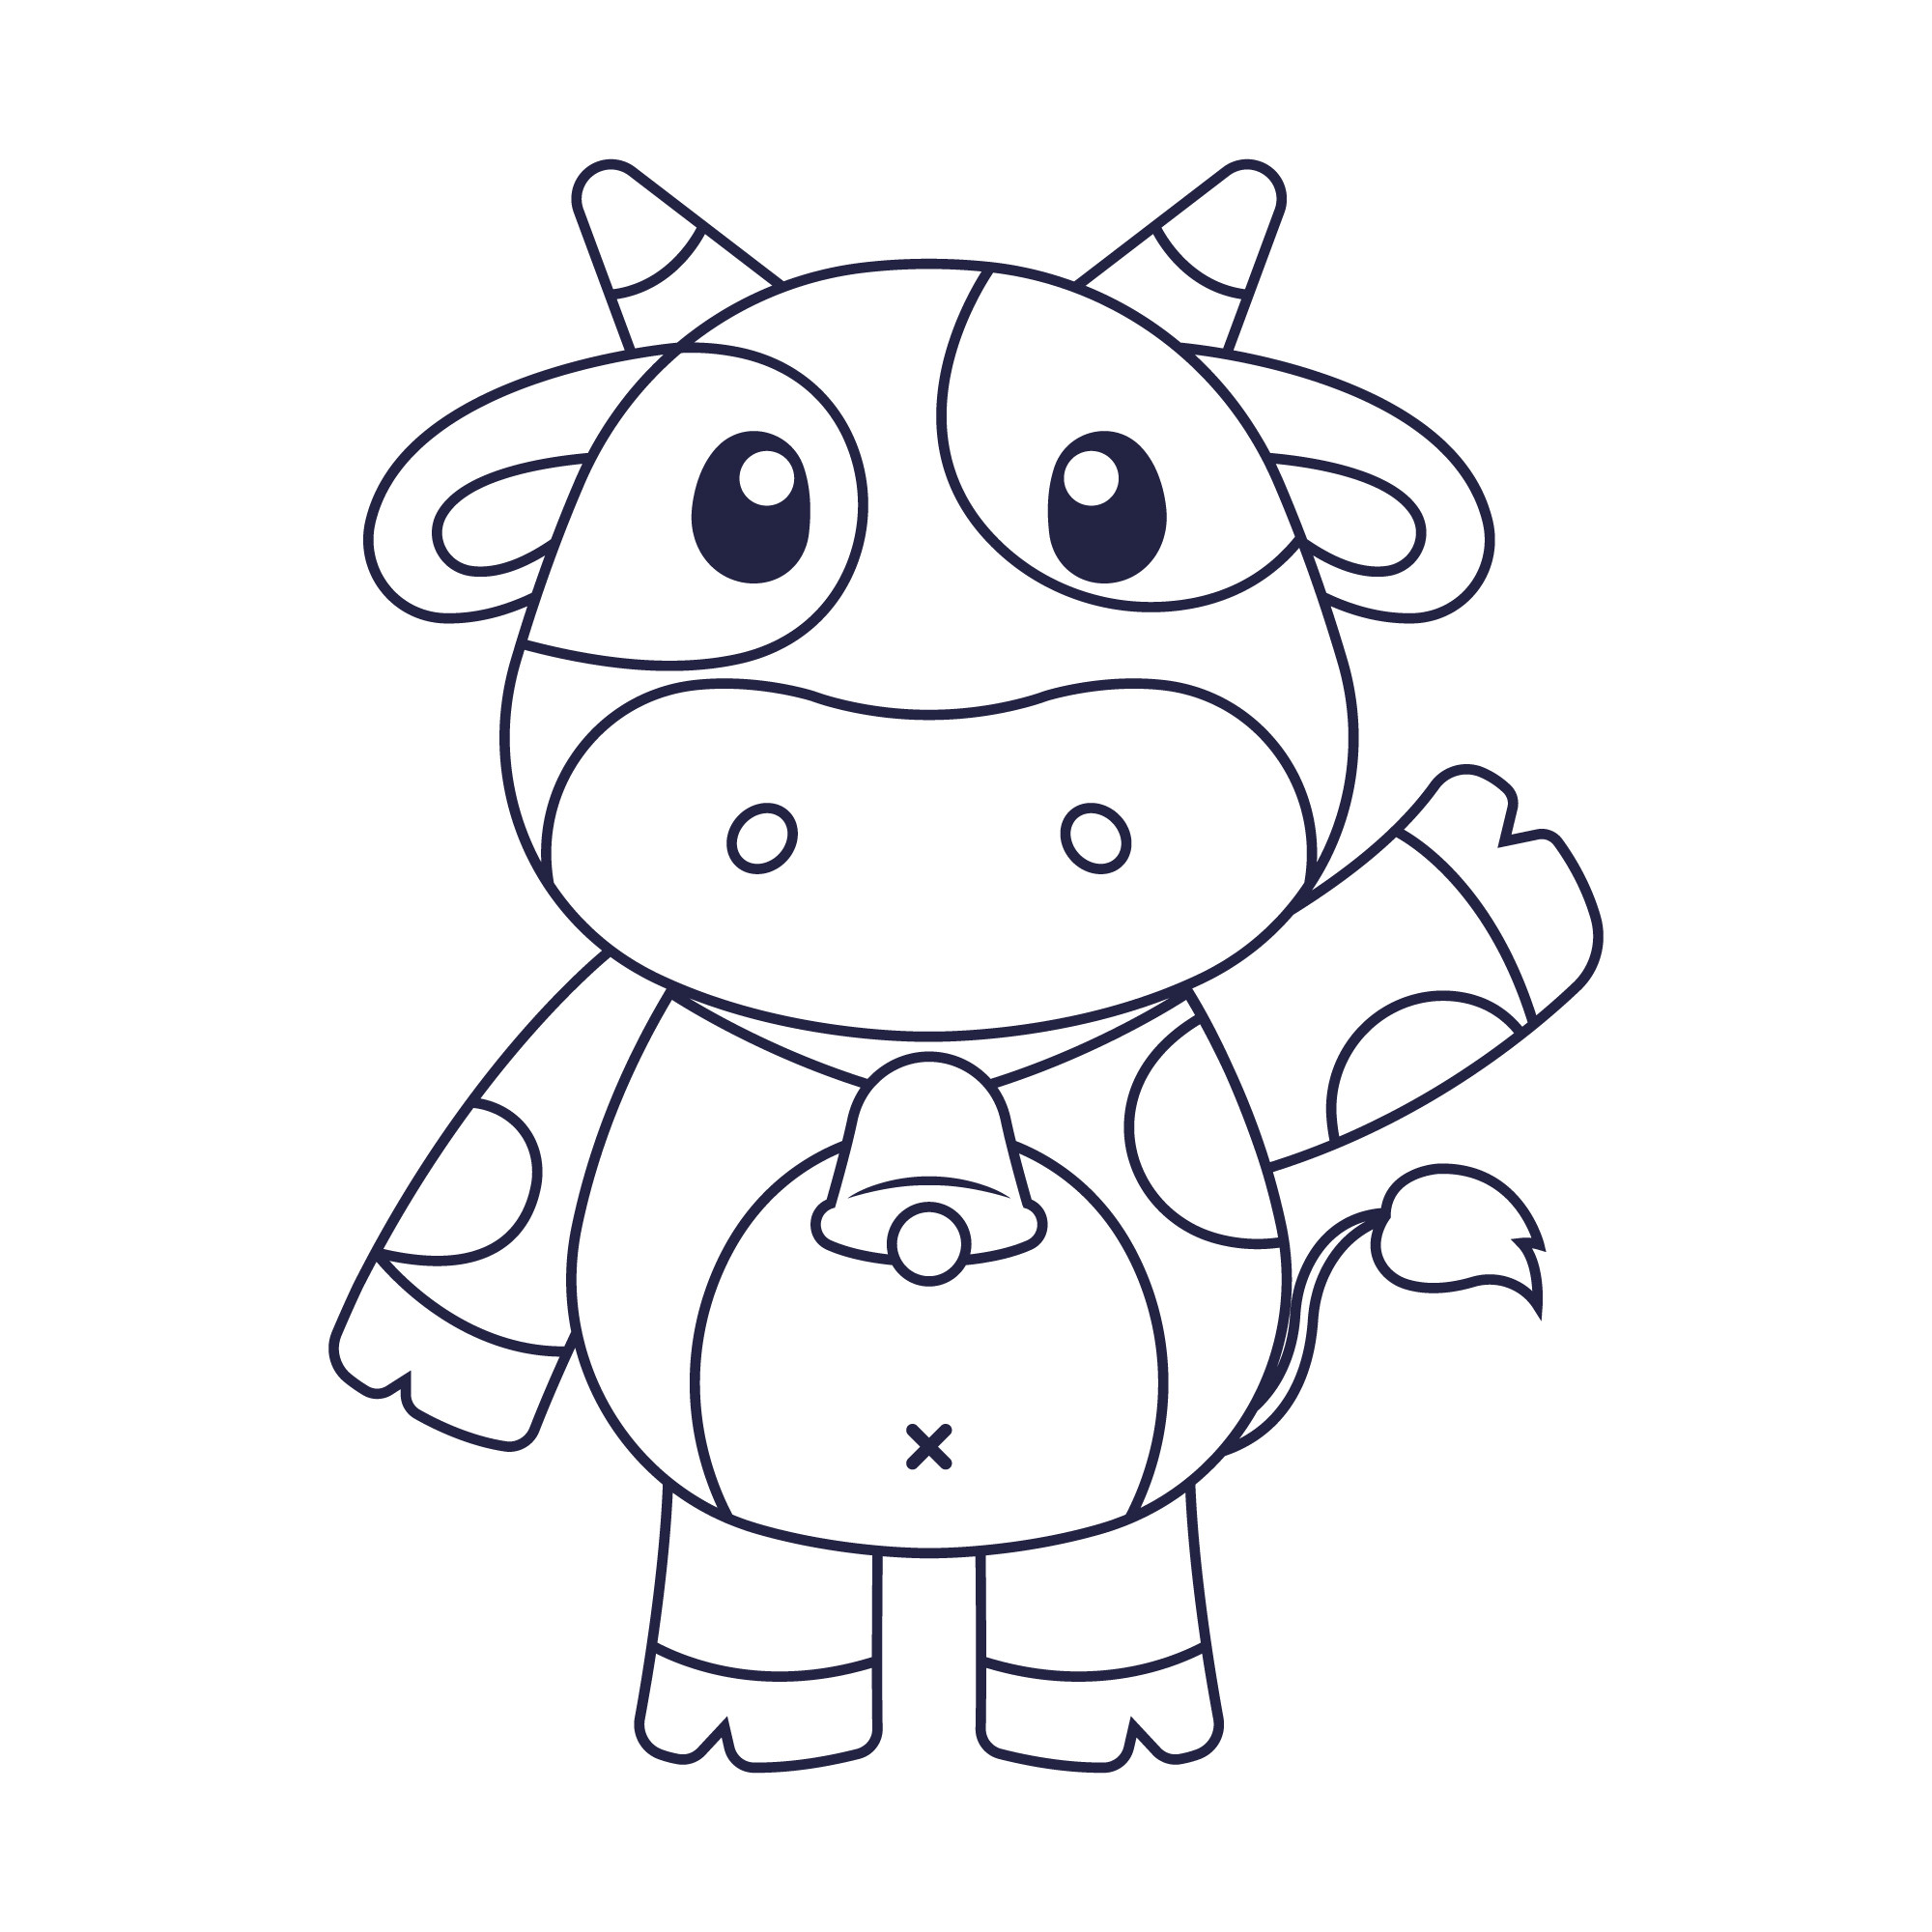 Раскраска для детей: мультяшная корова машет копытом